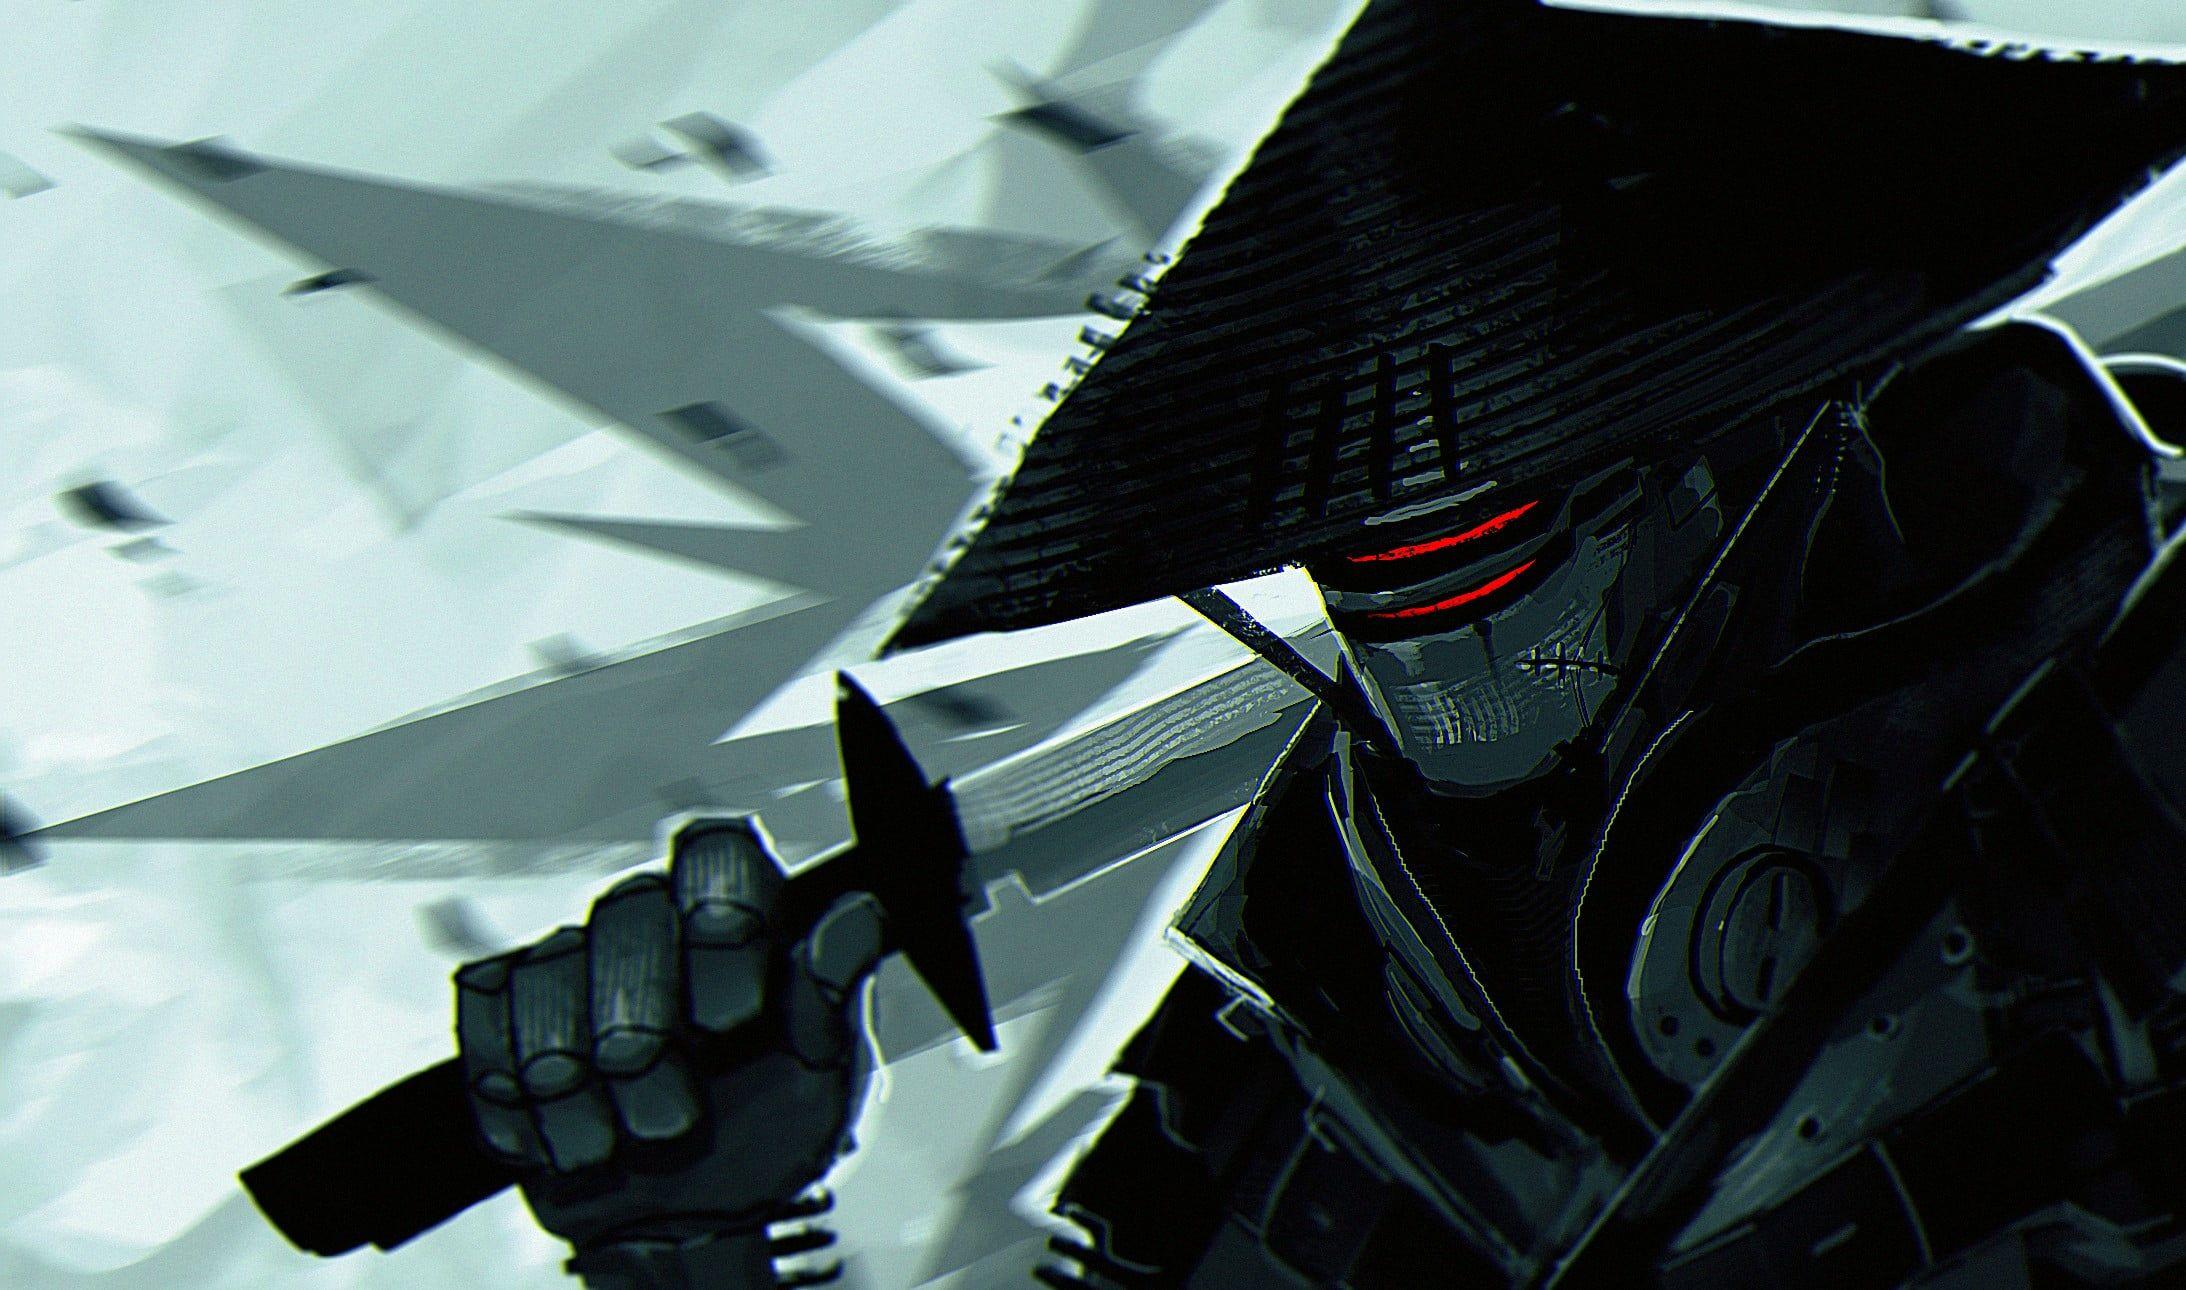 Samurai illustration, ninja robots, Rives Alexis, digital art